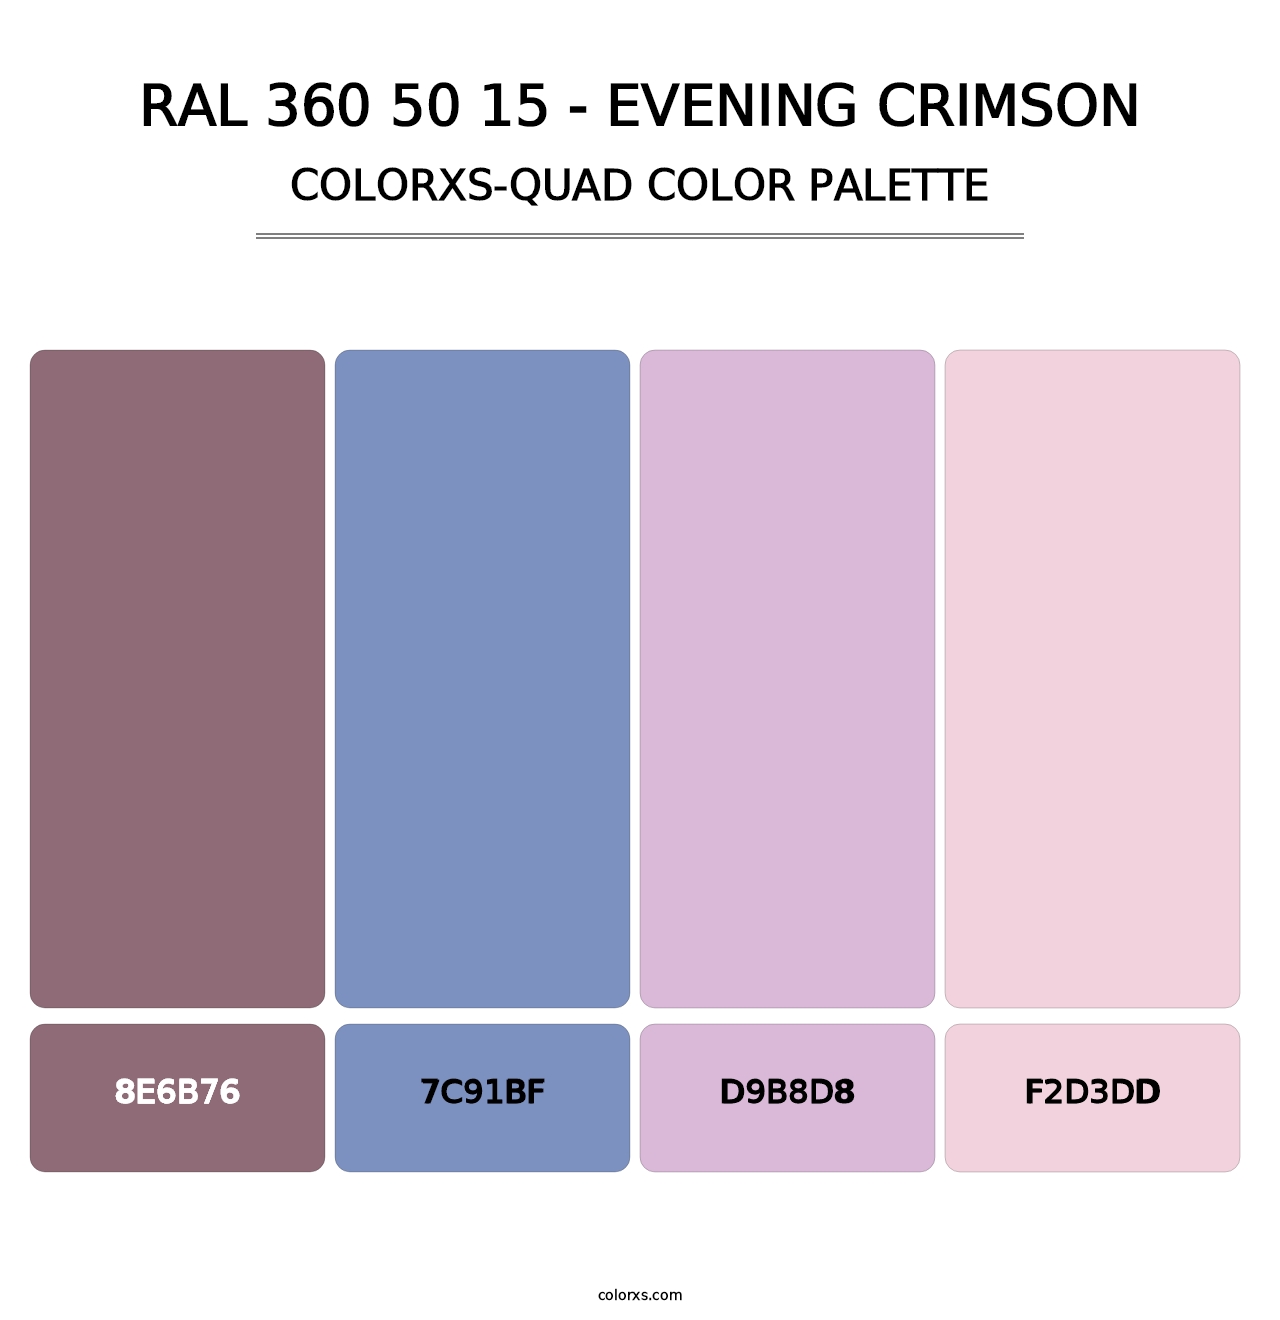 RAL 360 50 15 - Evening Crimson - Colorxs Quad Palette